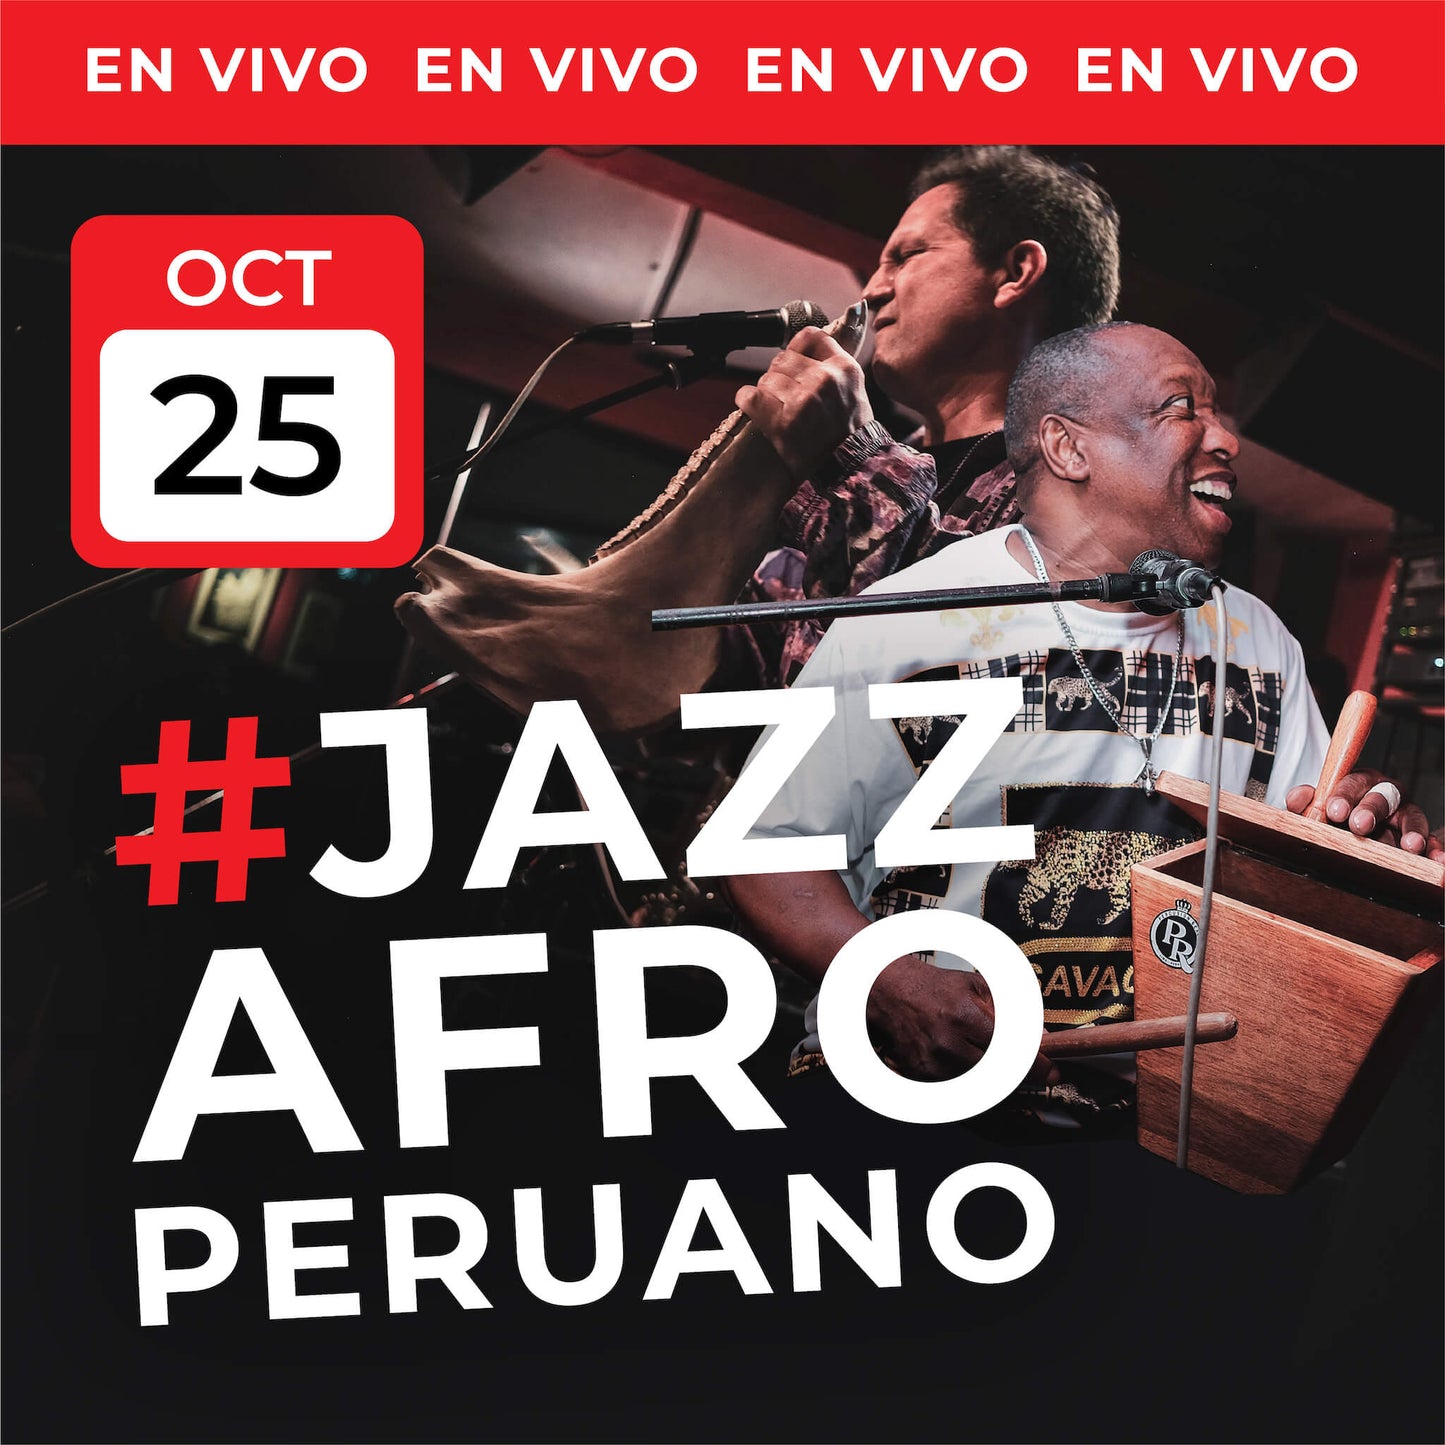 25 Oct | #JazzAfroperuano EN VIVO